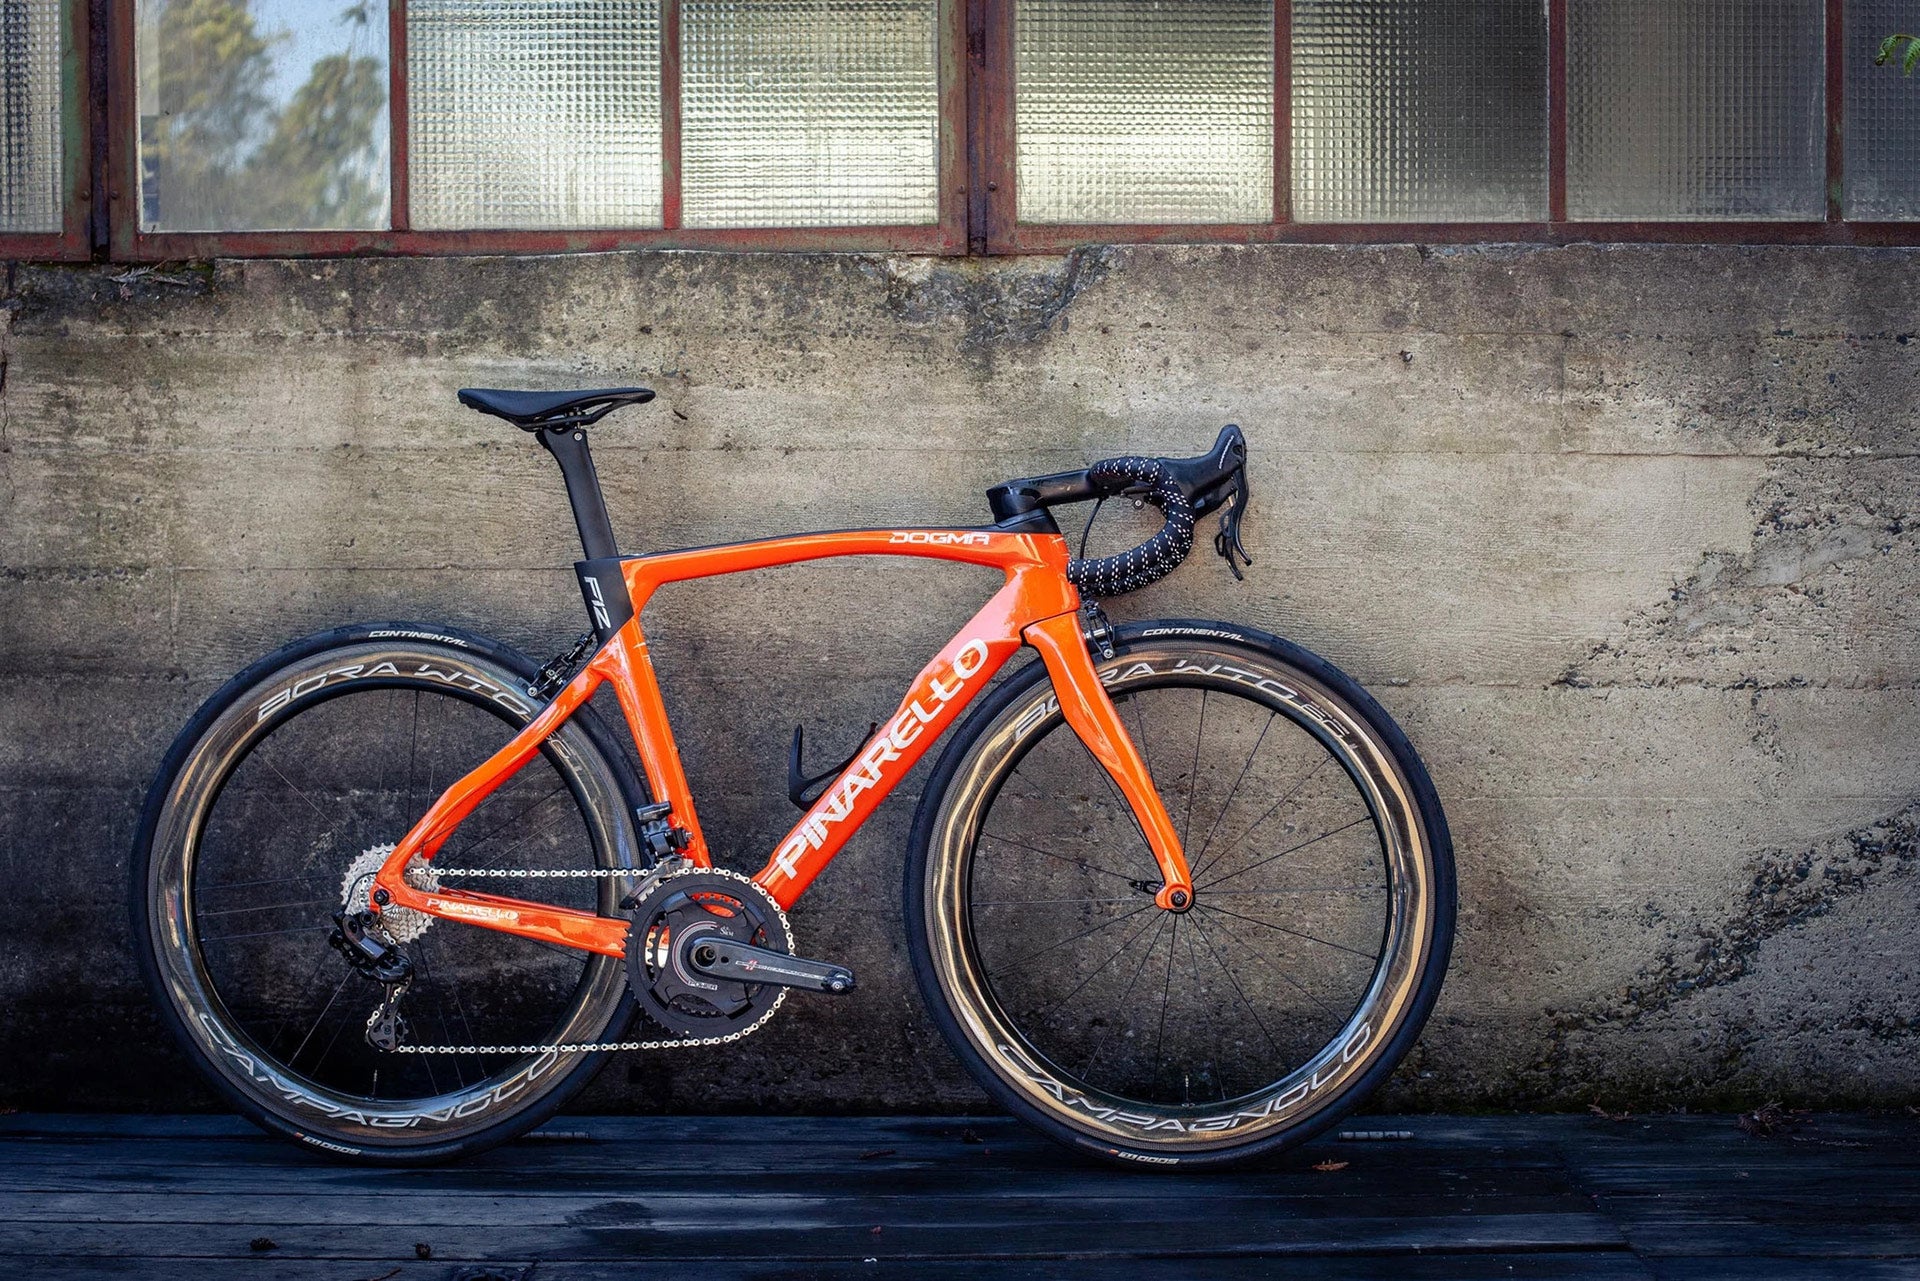 Bike of the Week: A Tangerine Pinarello Dogma F12 Dream